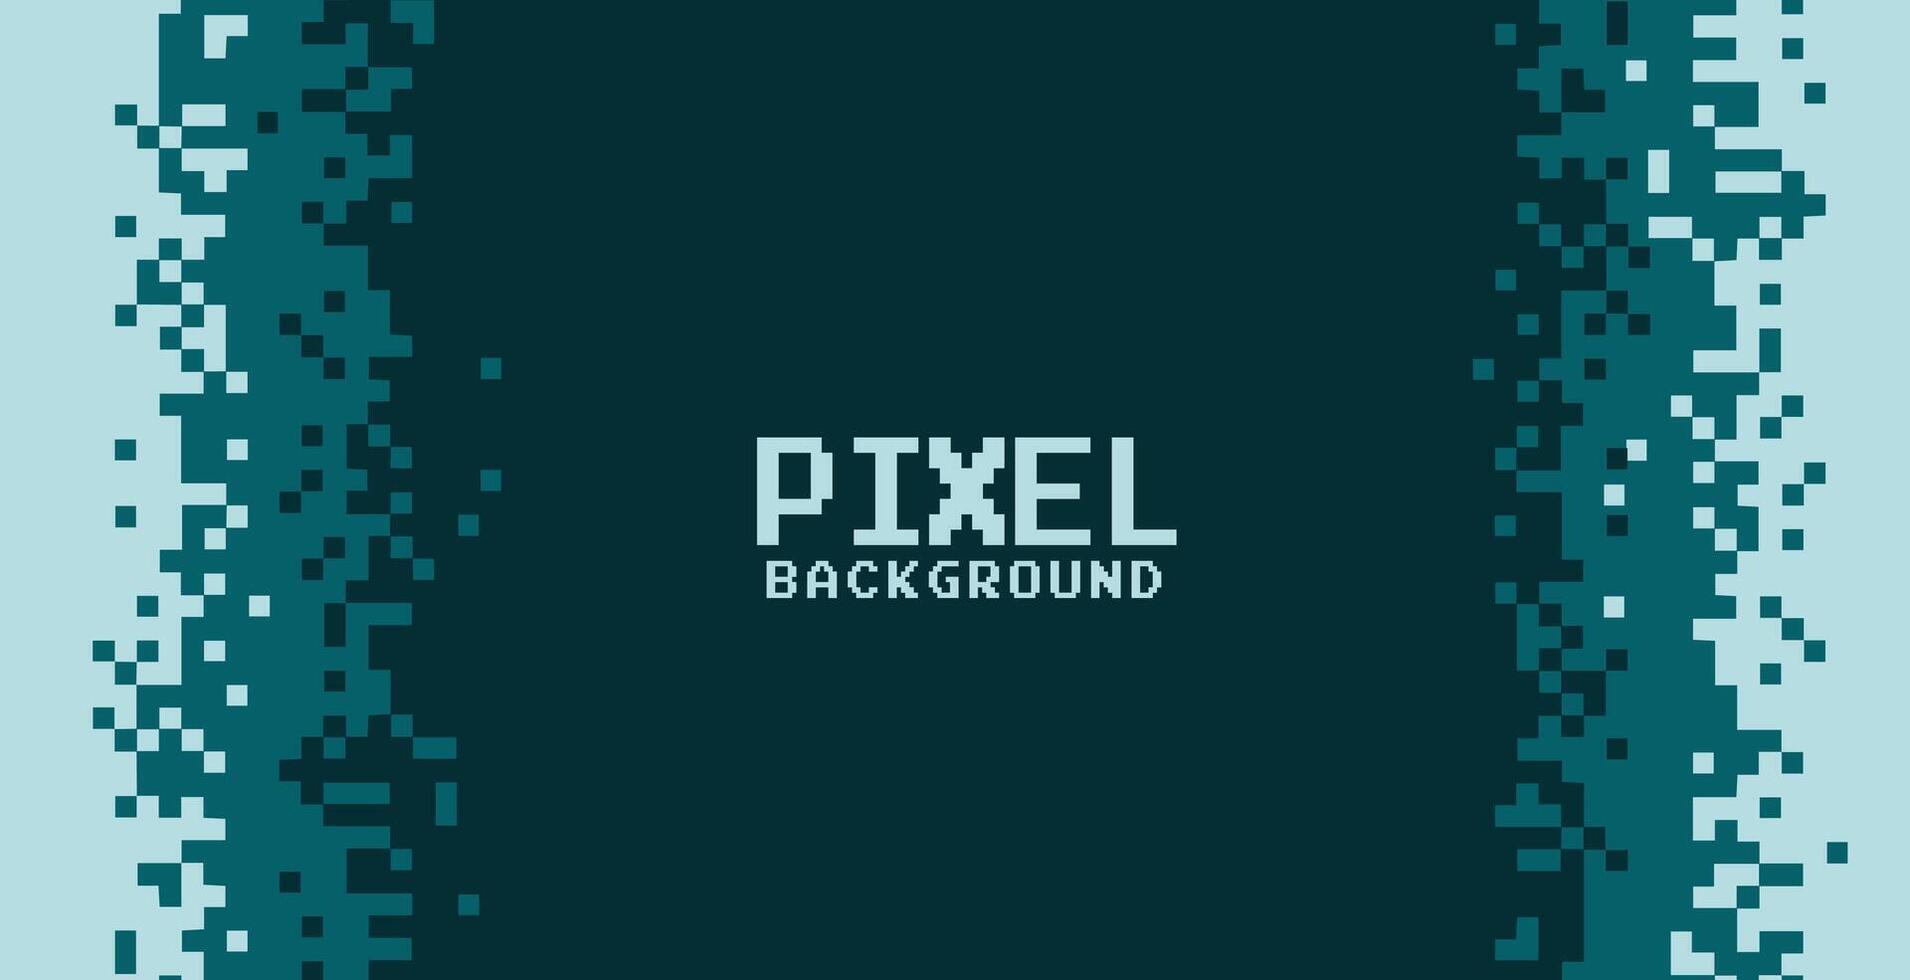 spel stijl pixel achtergrond ontwerp vector